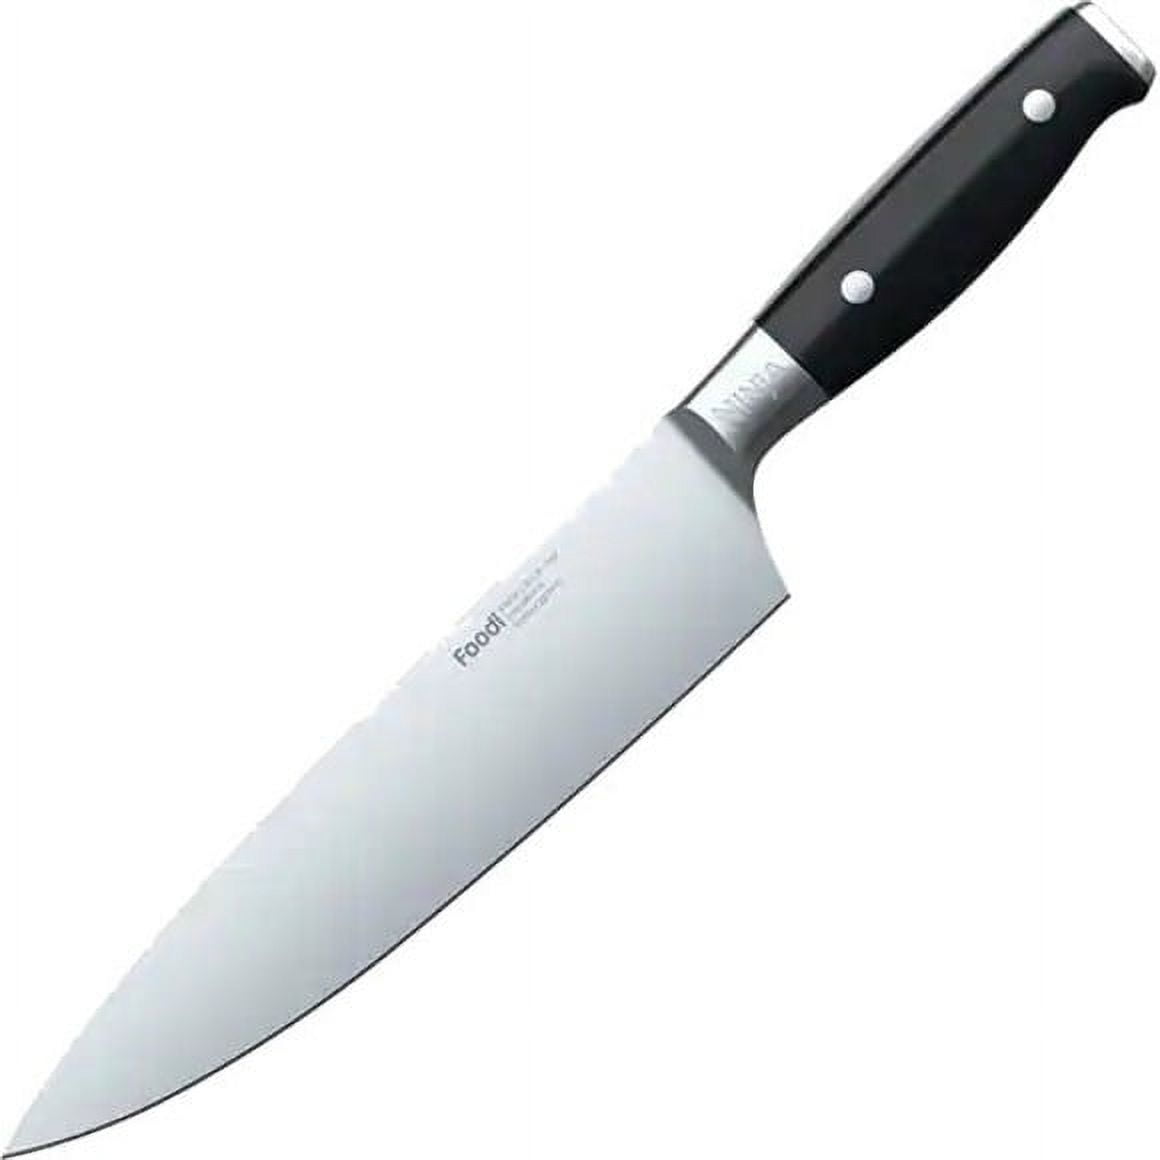 NINJA NeverDull Chef Knife and Sharpener System User Guide